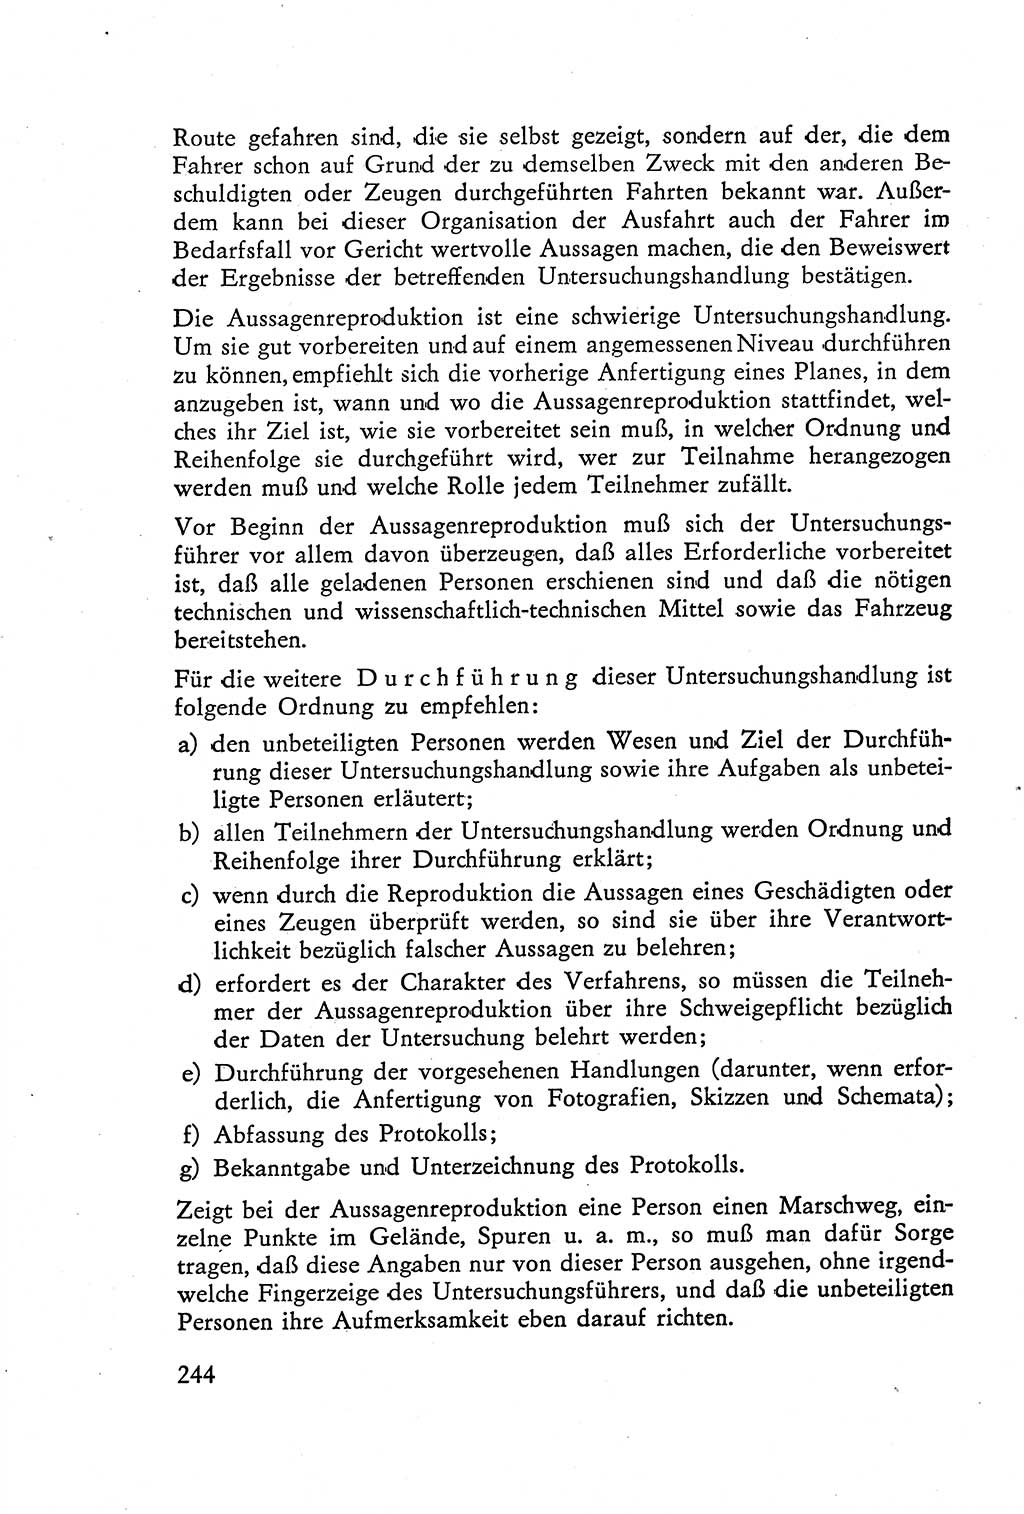 Die Vernehmung [Deutsche Demokratische Republik (DDR)] 1960, Seite 244 (Vern. DDR 1960, S. 244)